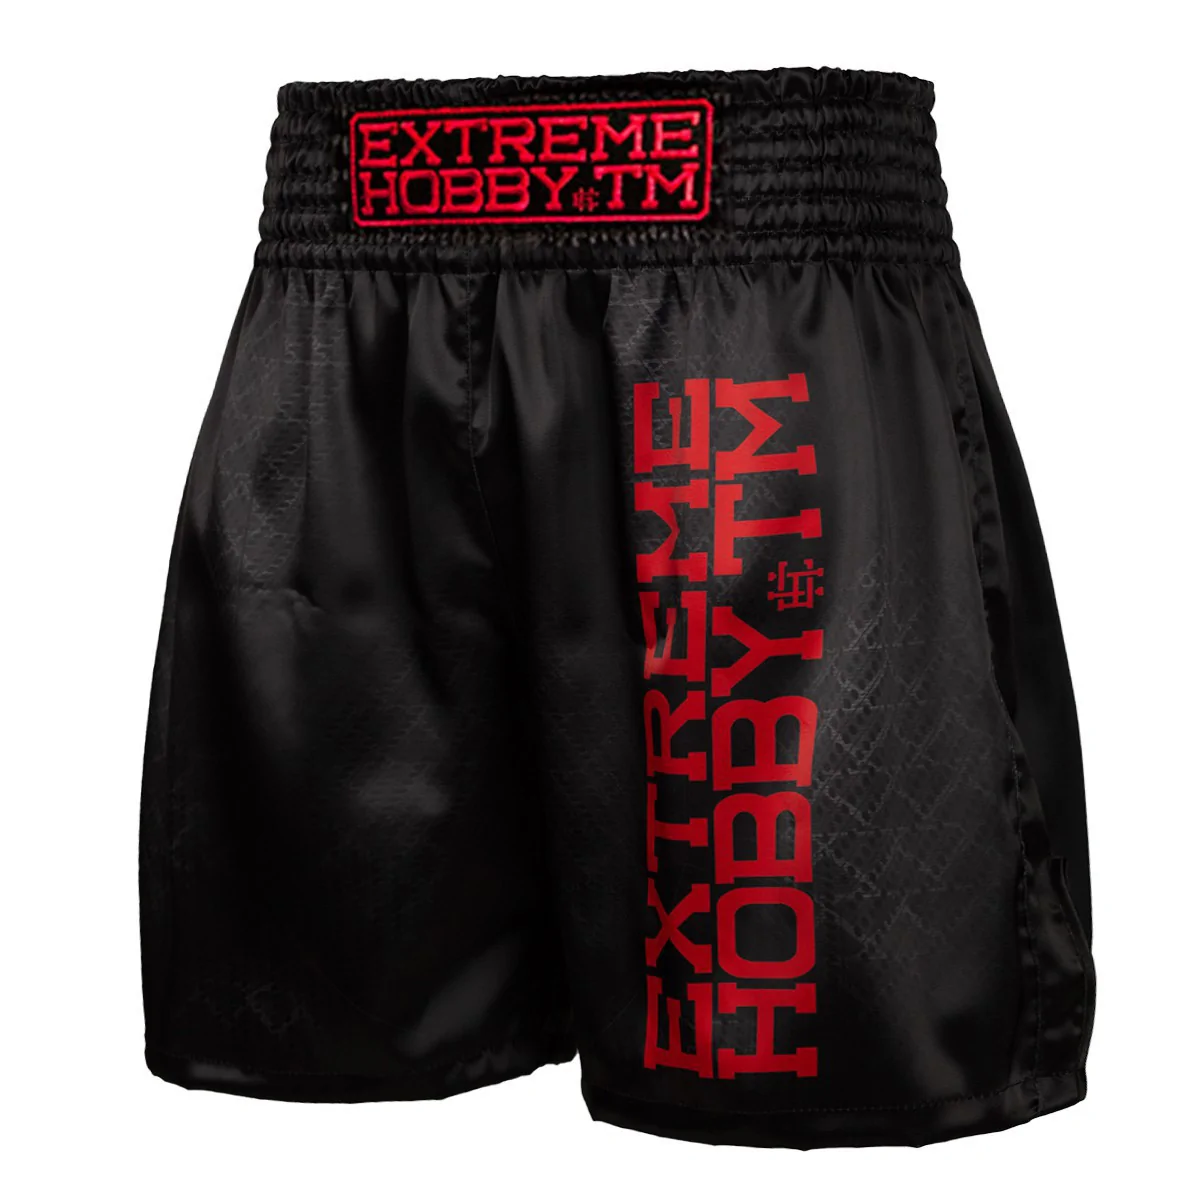 Pantalones cortos de boxeo para hombre BLACK ARMOUR Extreme Hobby